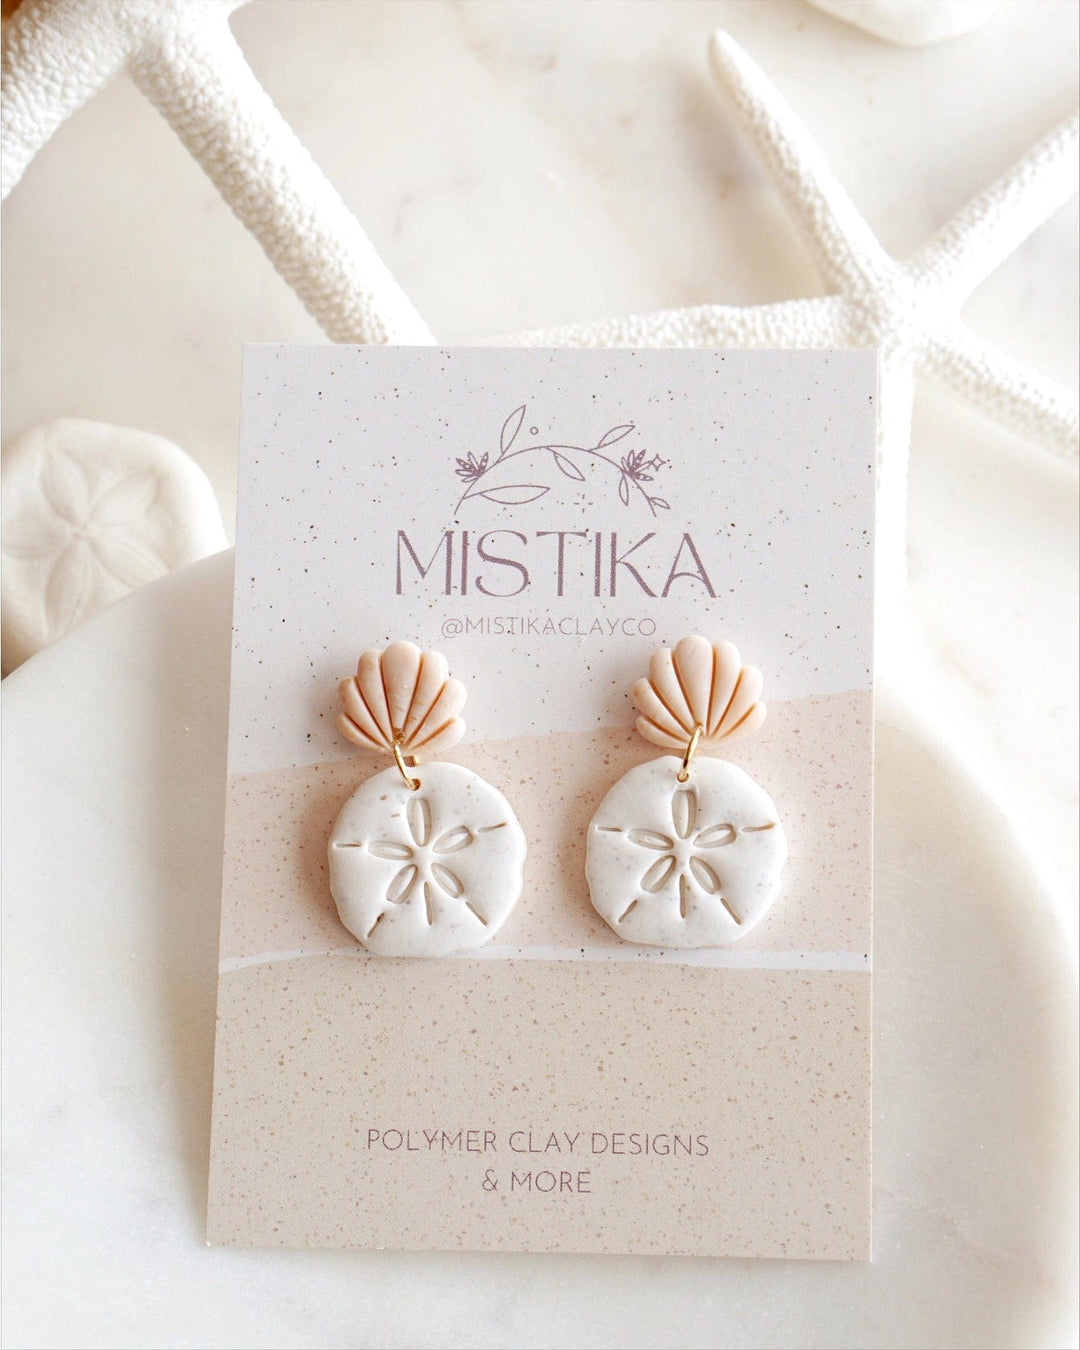 Mistika Studio Earrings Sand Dollar Clay Earrings